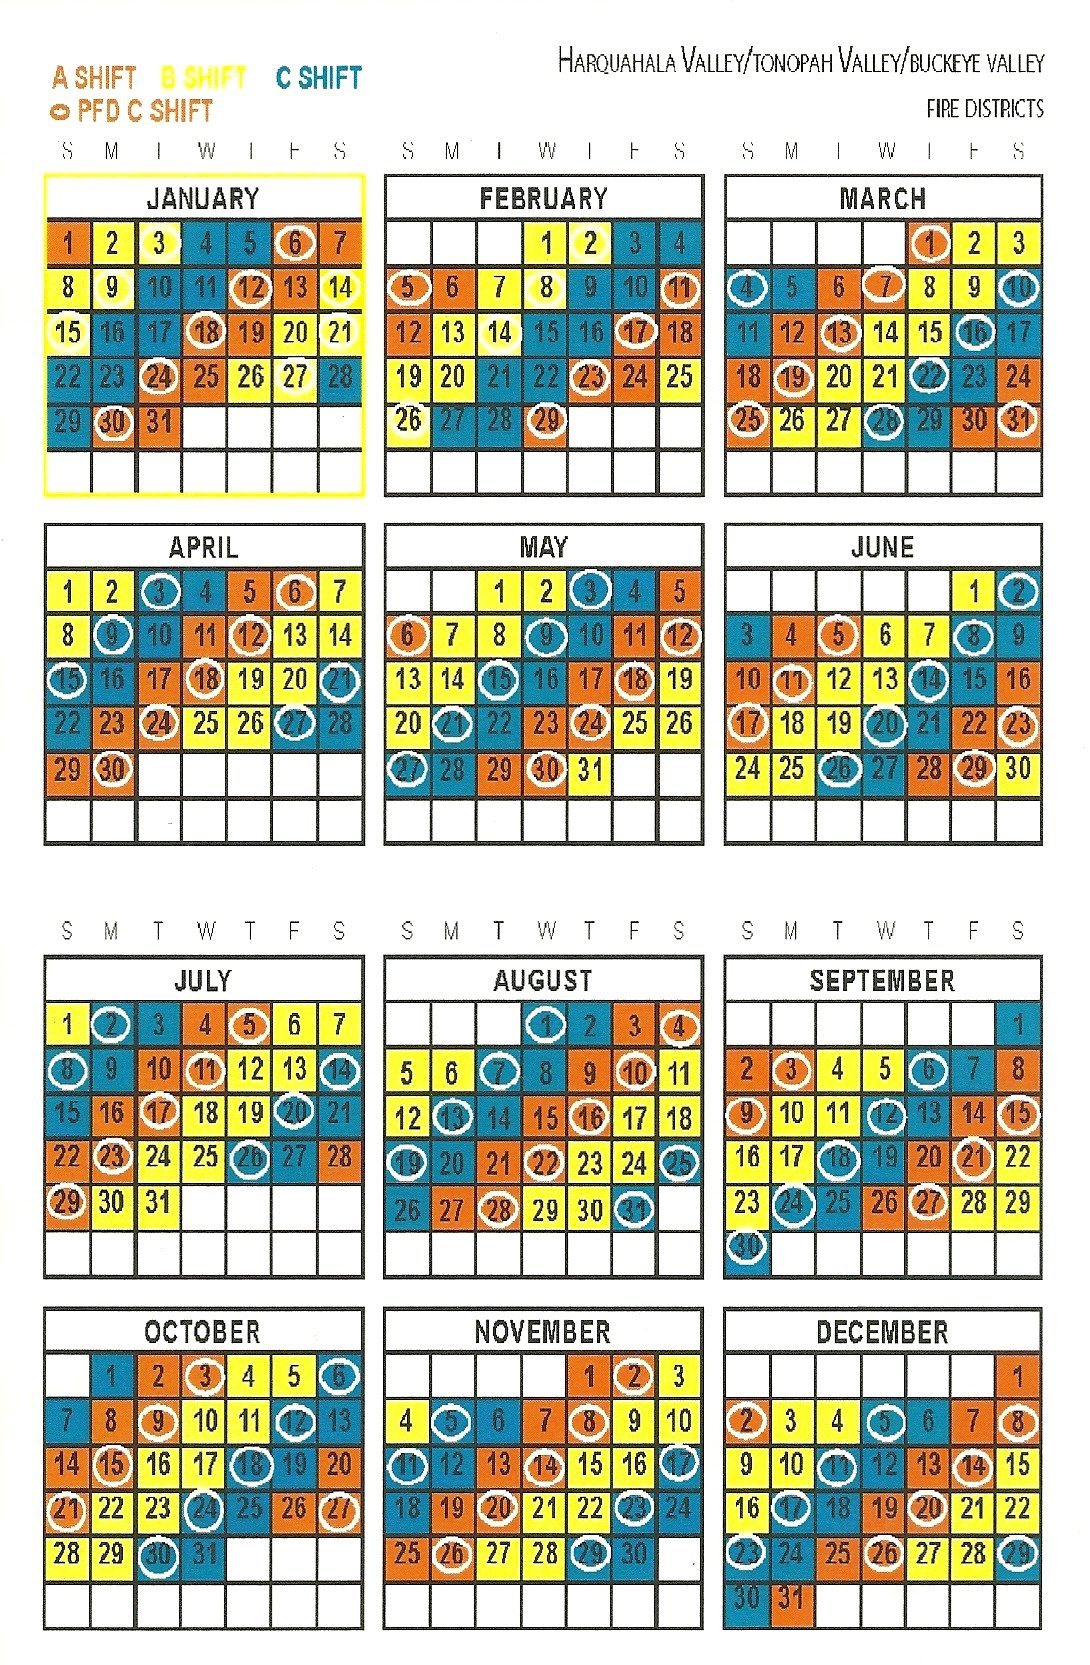 Firefighter Shift Schedule Tool :-Free Calendar Template